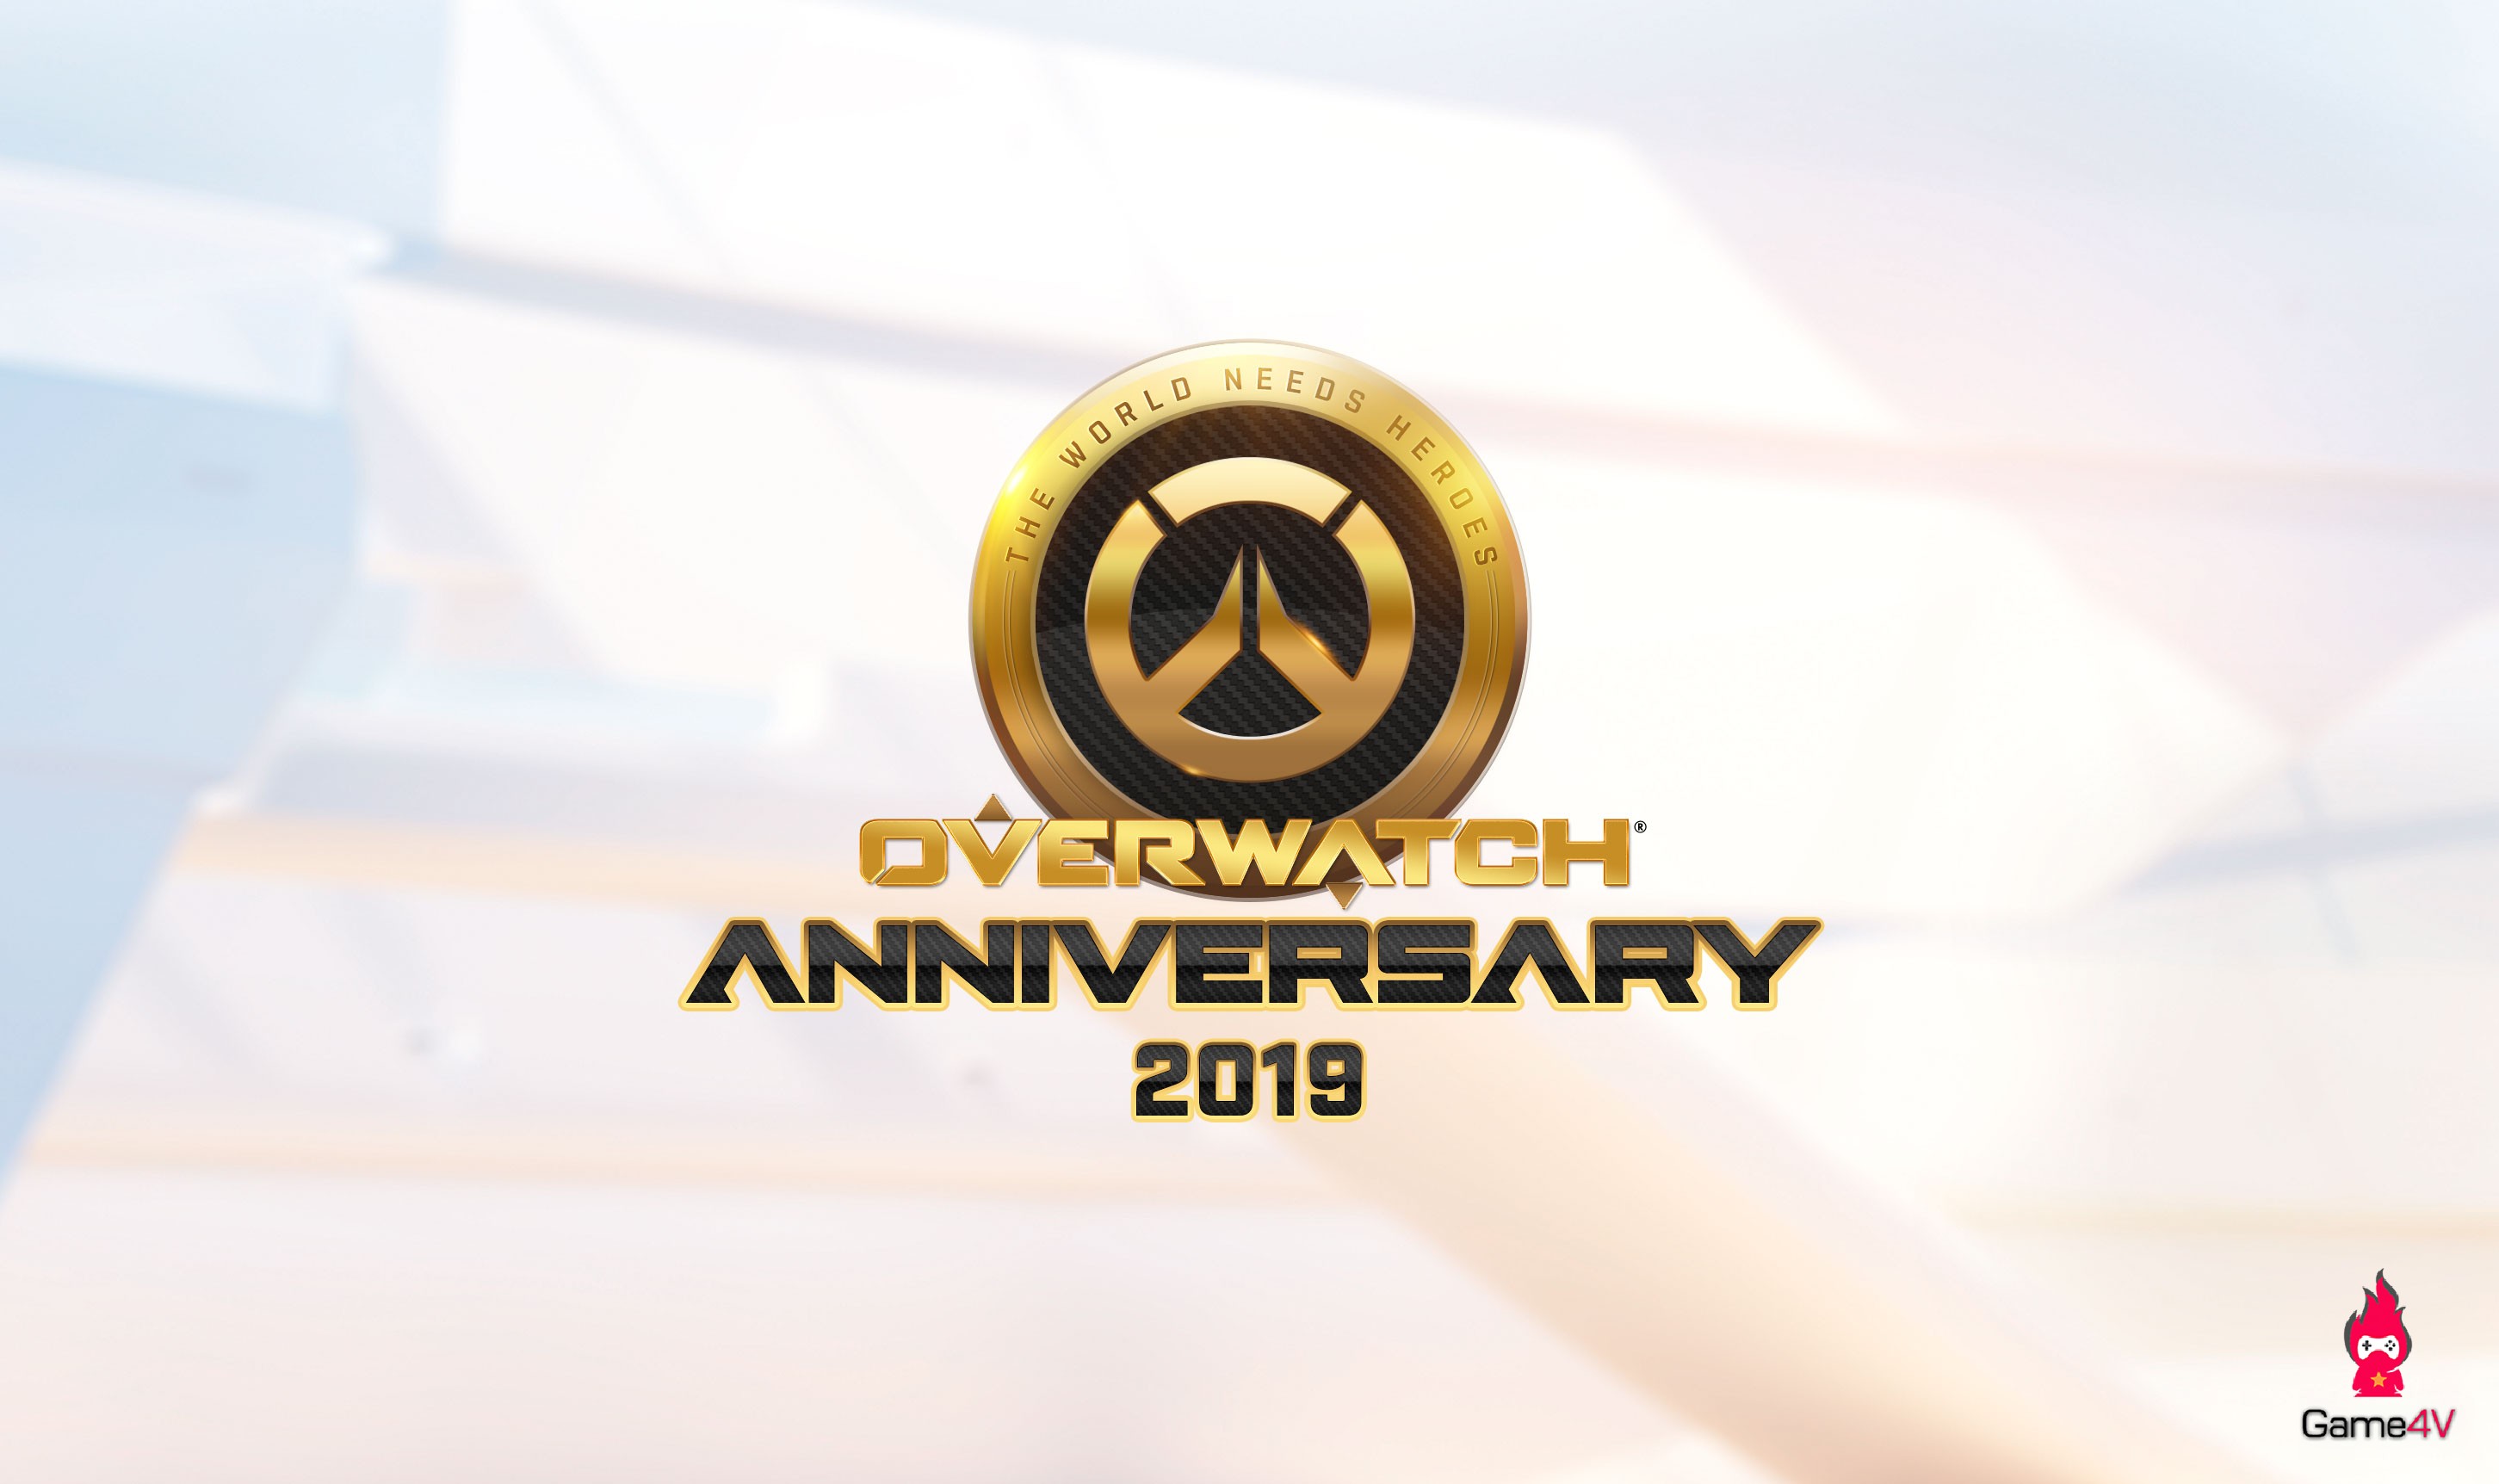 Overwatch lại mở cửa chơi miễn phí 1 tuần, bắt đầu từ ngày mai 21/05/2019